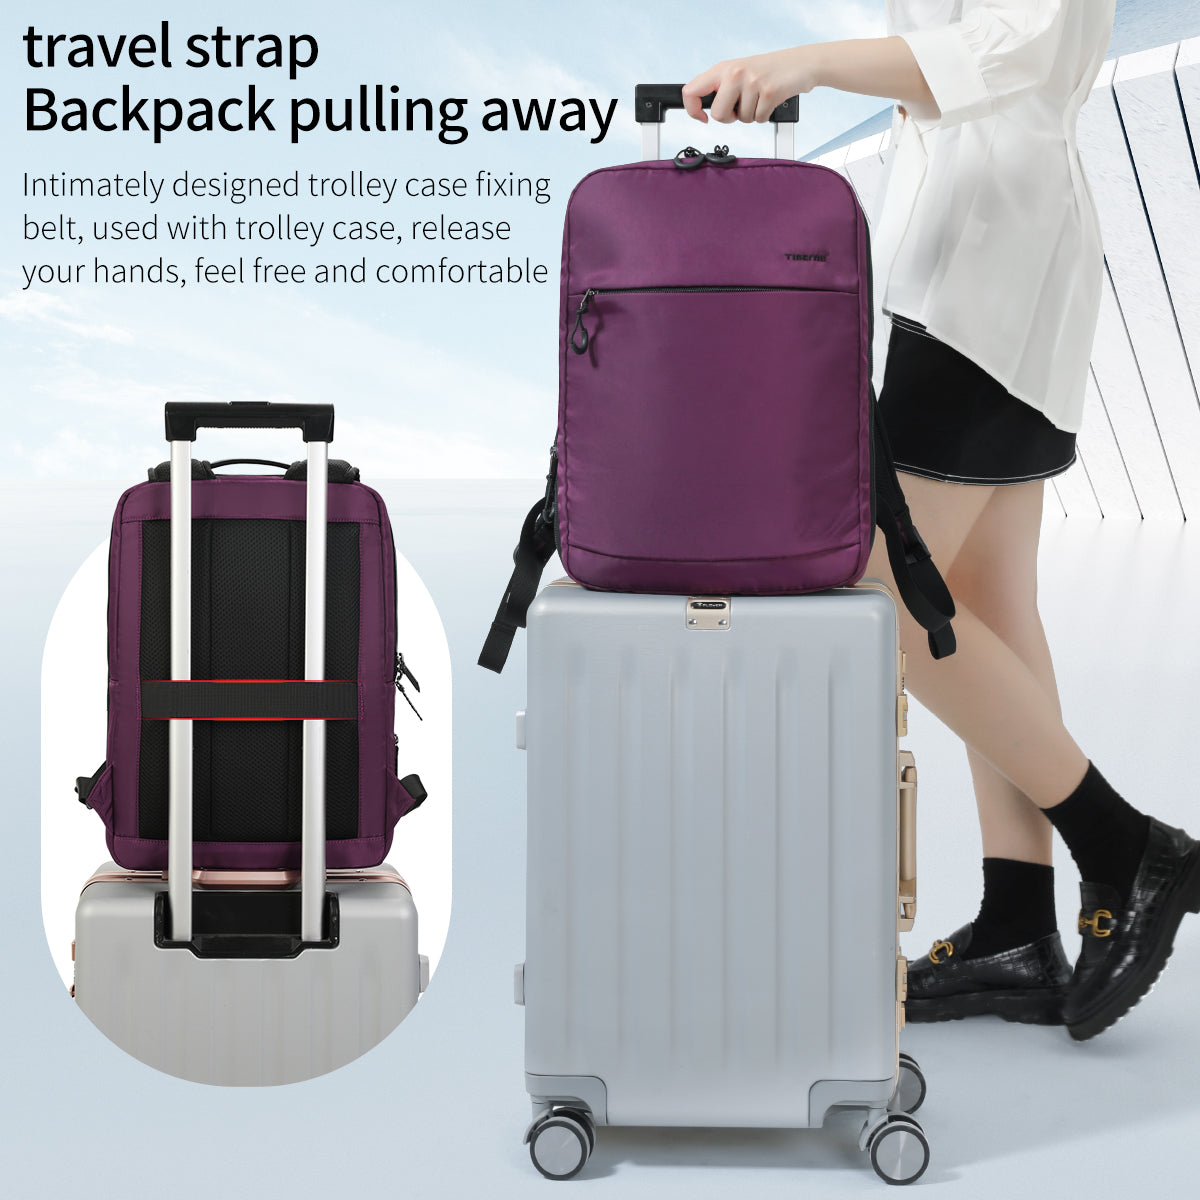 Tigernu TB-S slim backpack for women blue